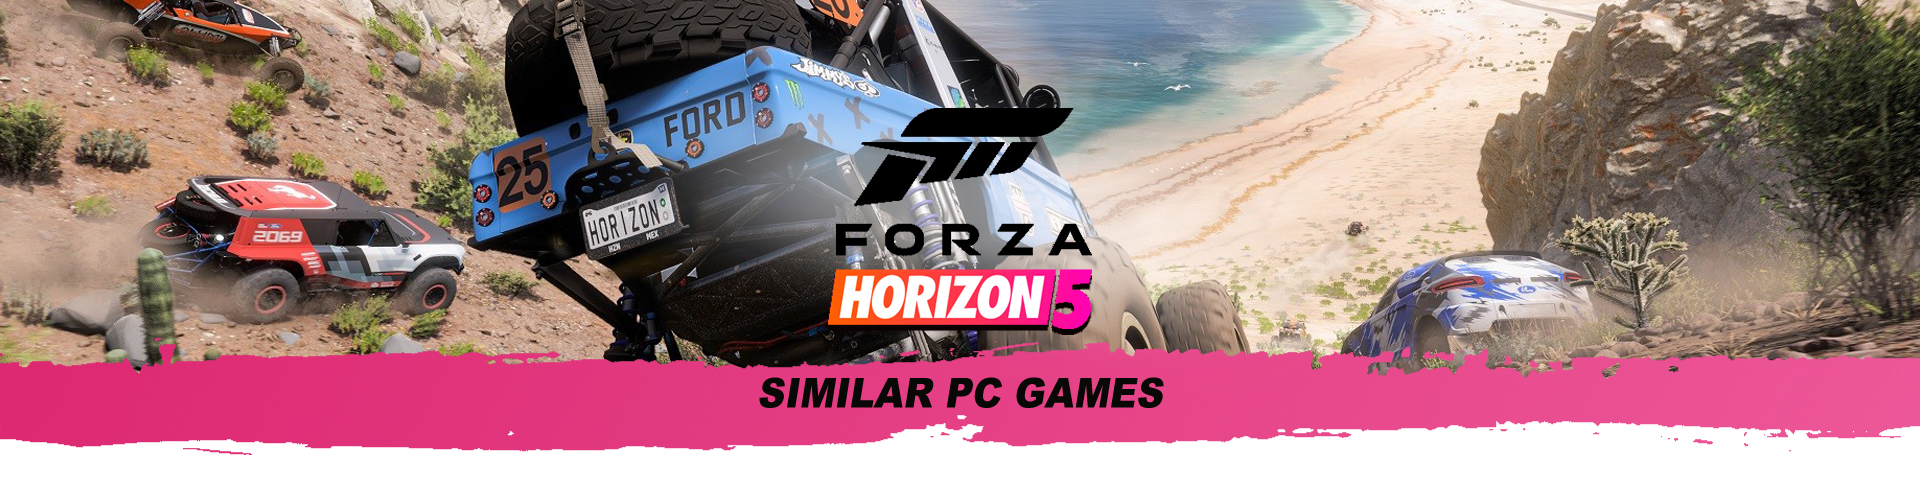 Forza Horizon: I migliori giochi simili su PC